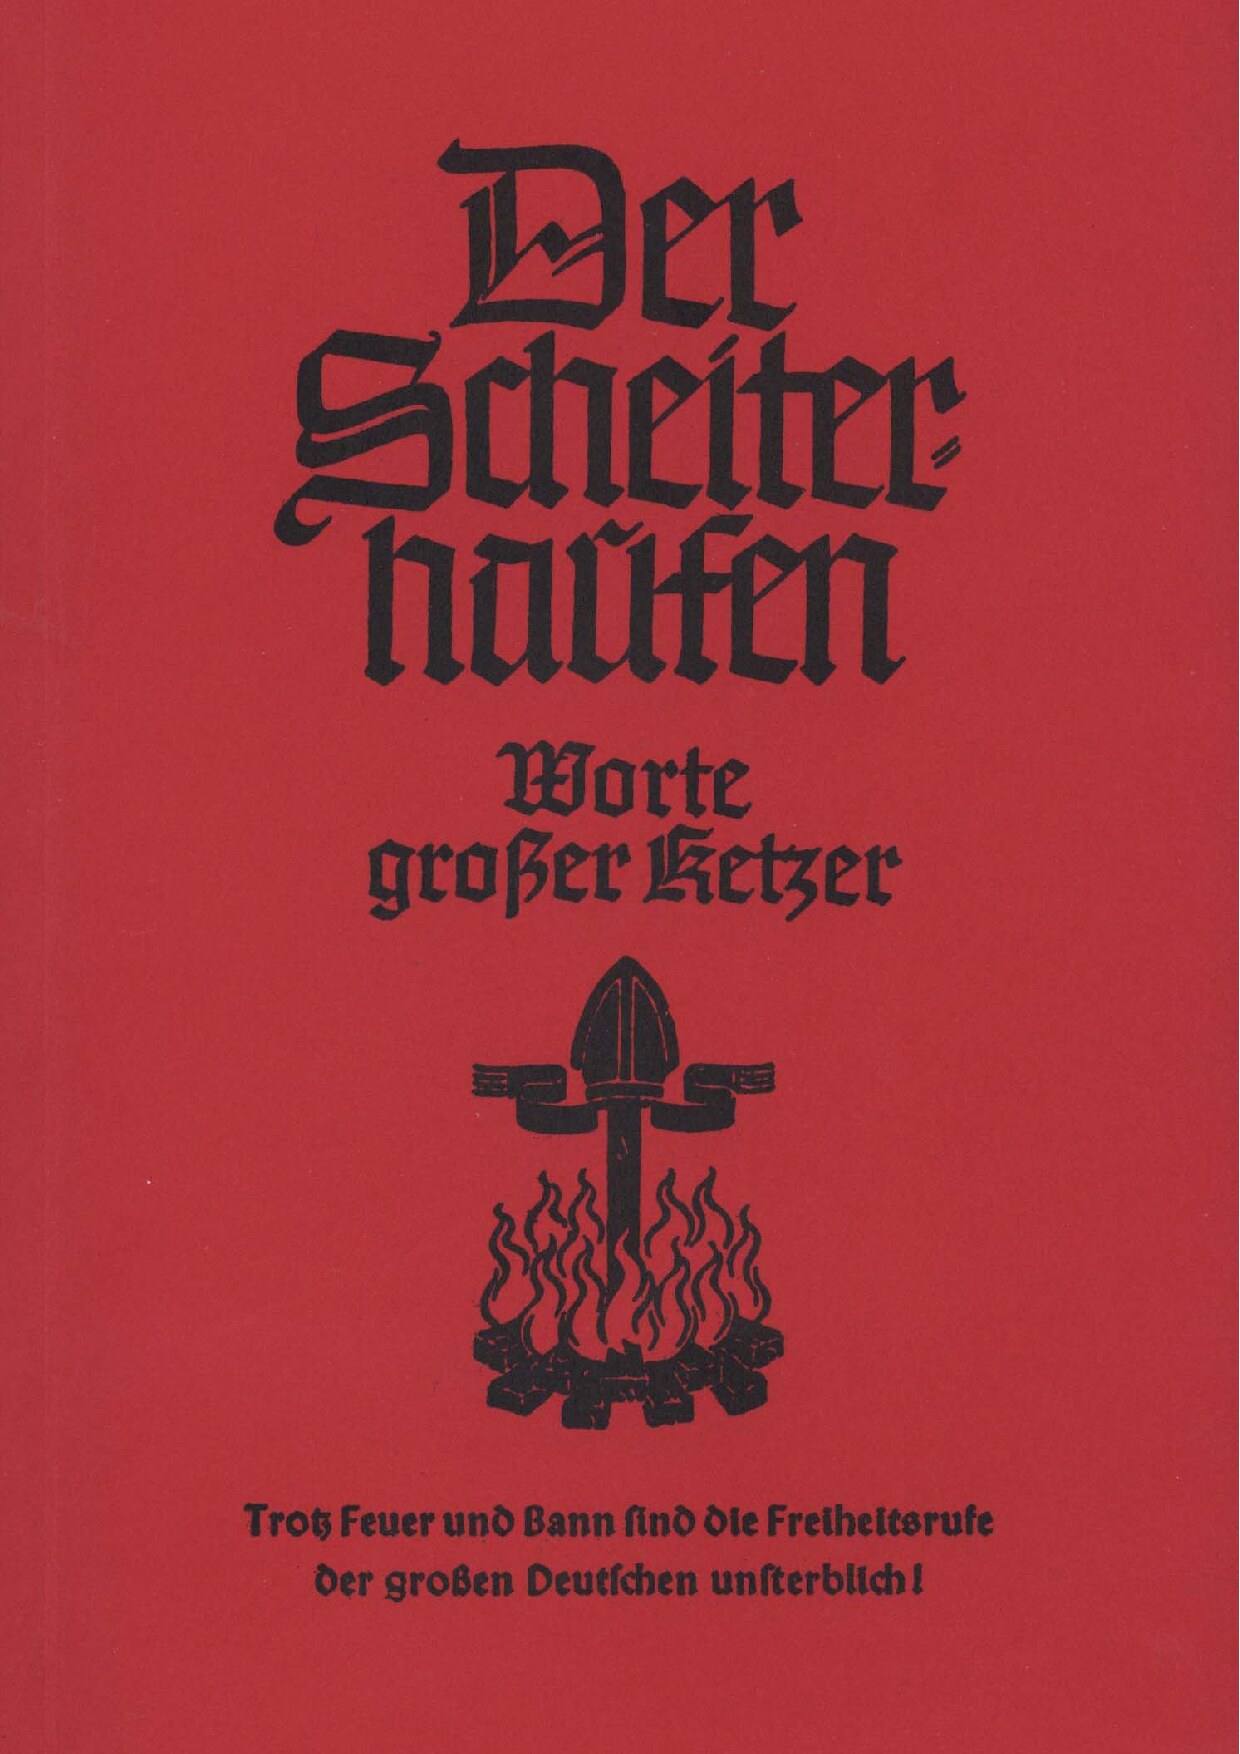 Der Scheiterhaufen - Worte grosser Ketzer (1942, 110 S., Scan)